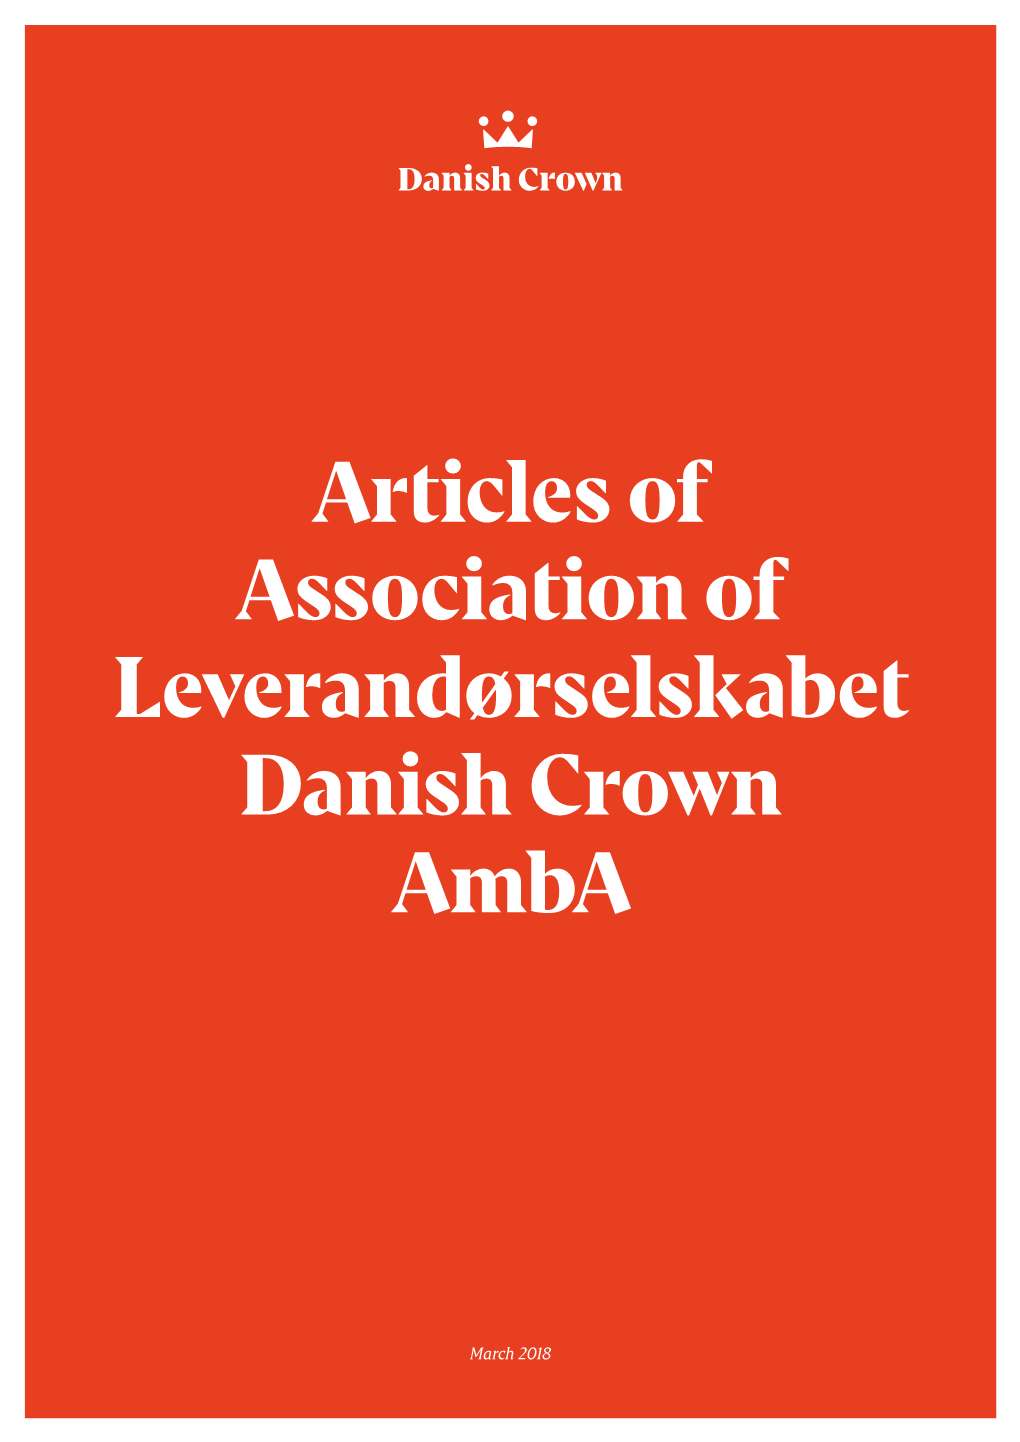 Articles of Association of Leverandørselskabet Danish Crown Amba